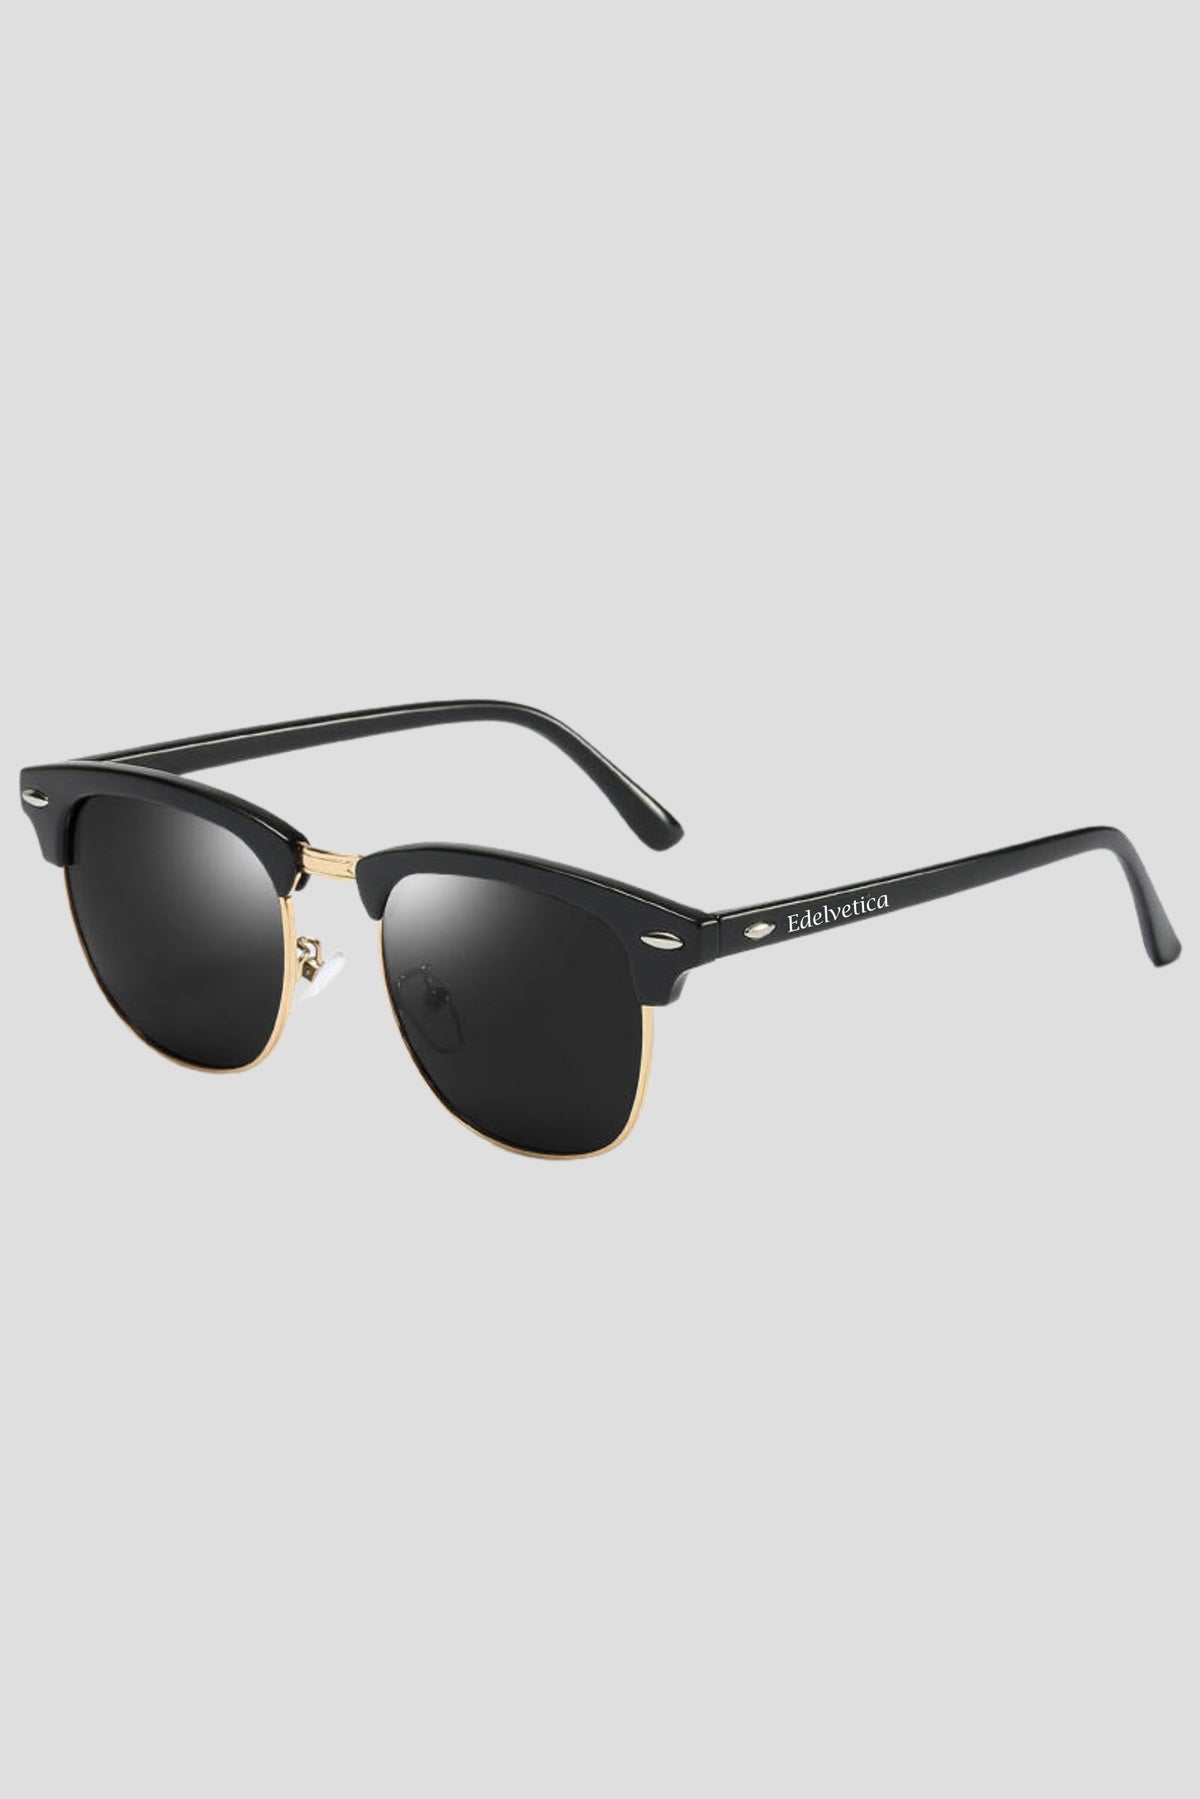 Stilvolle Sonnenbrille Classic Edelvetica mit UV 400 Schutz in verschiedenen Farben